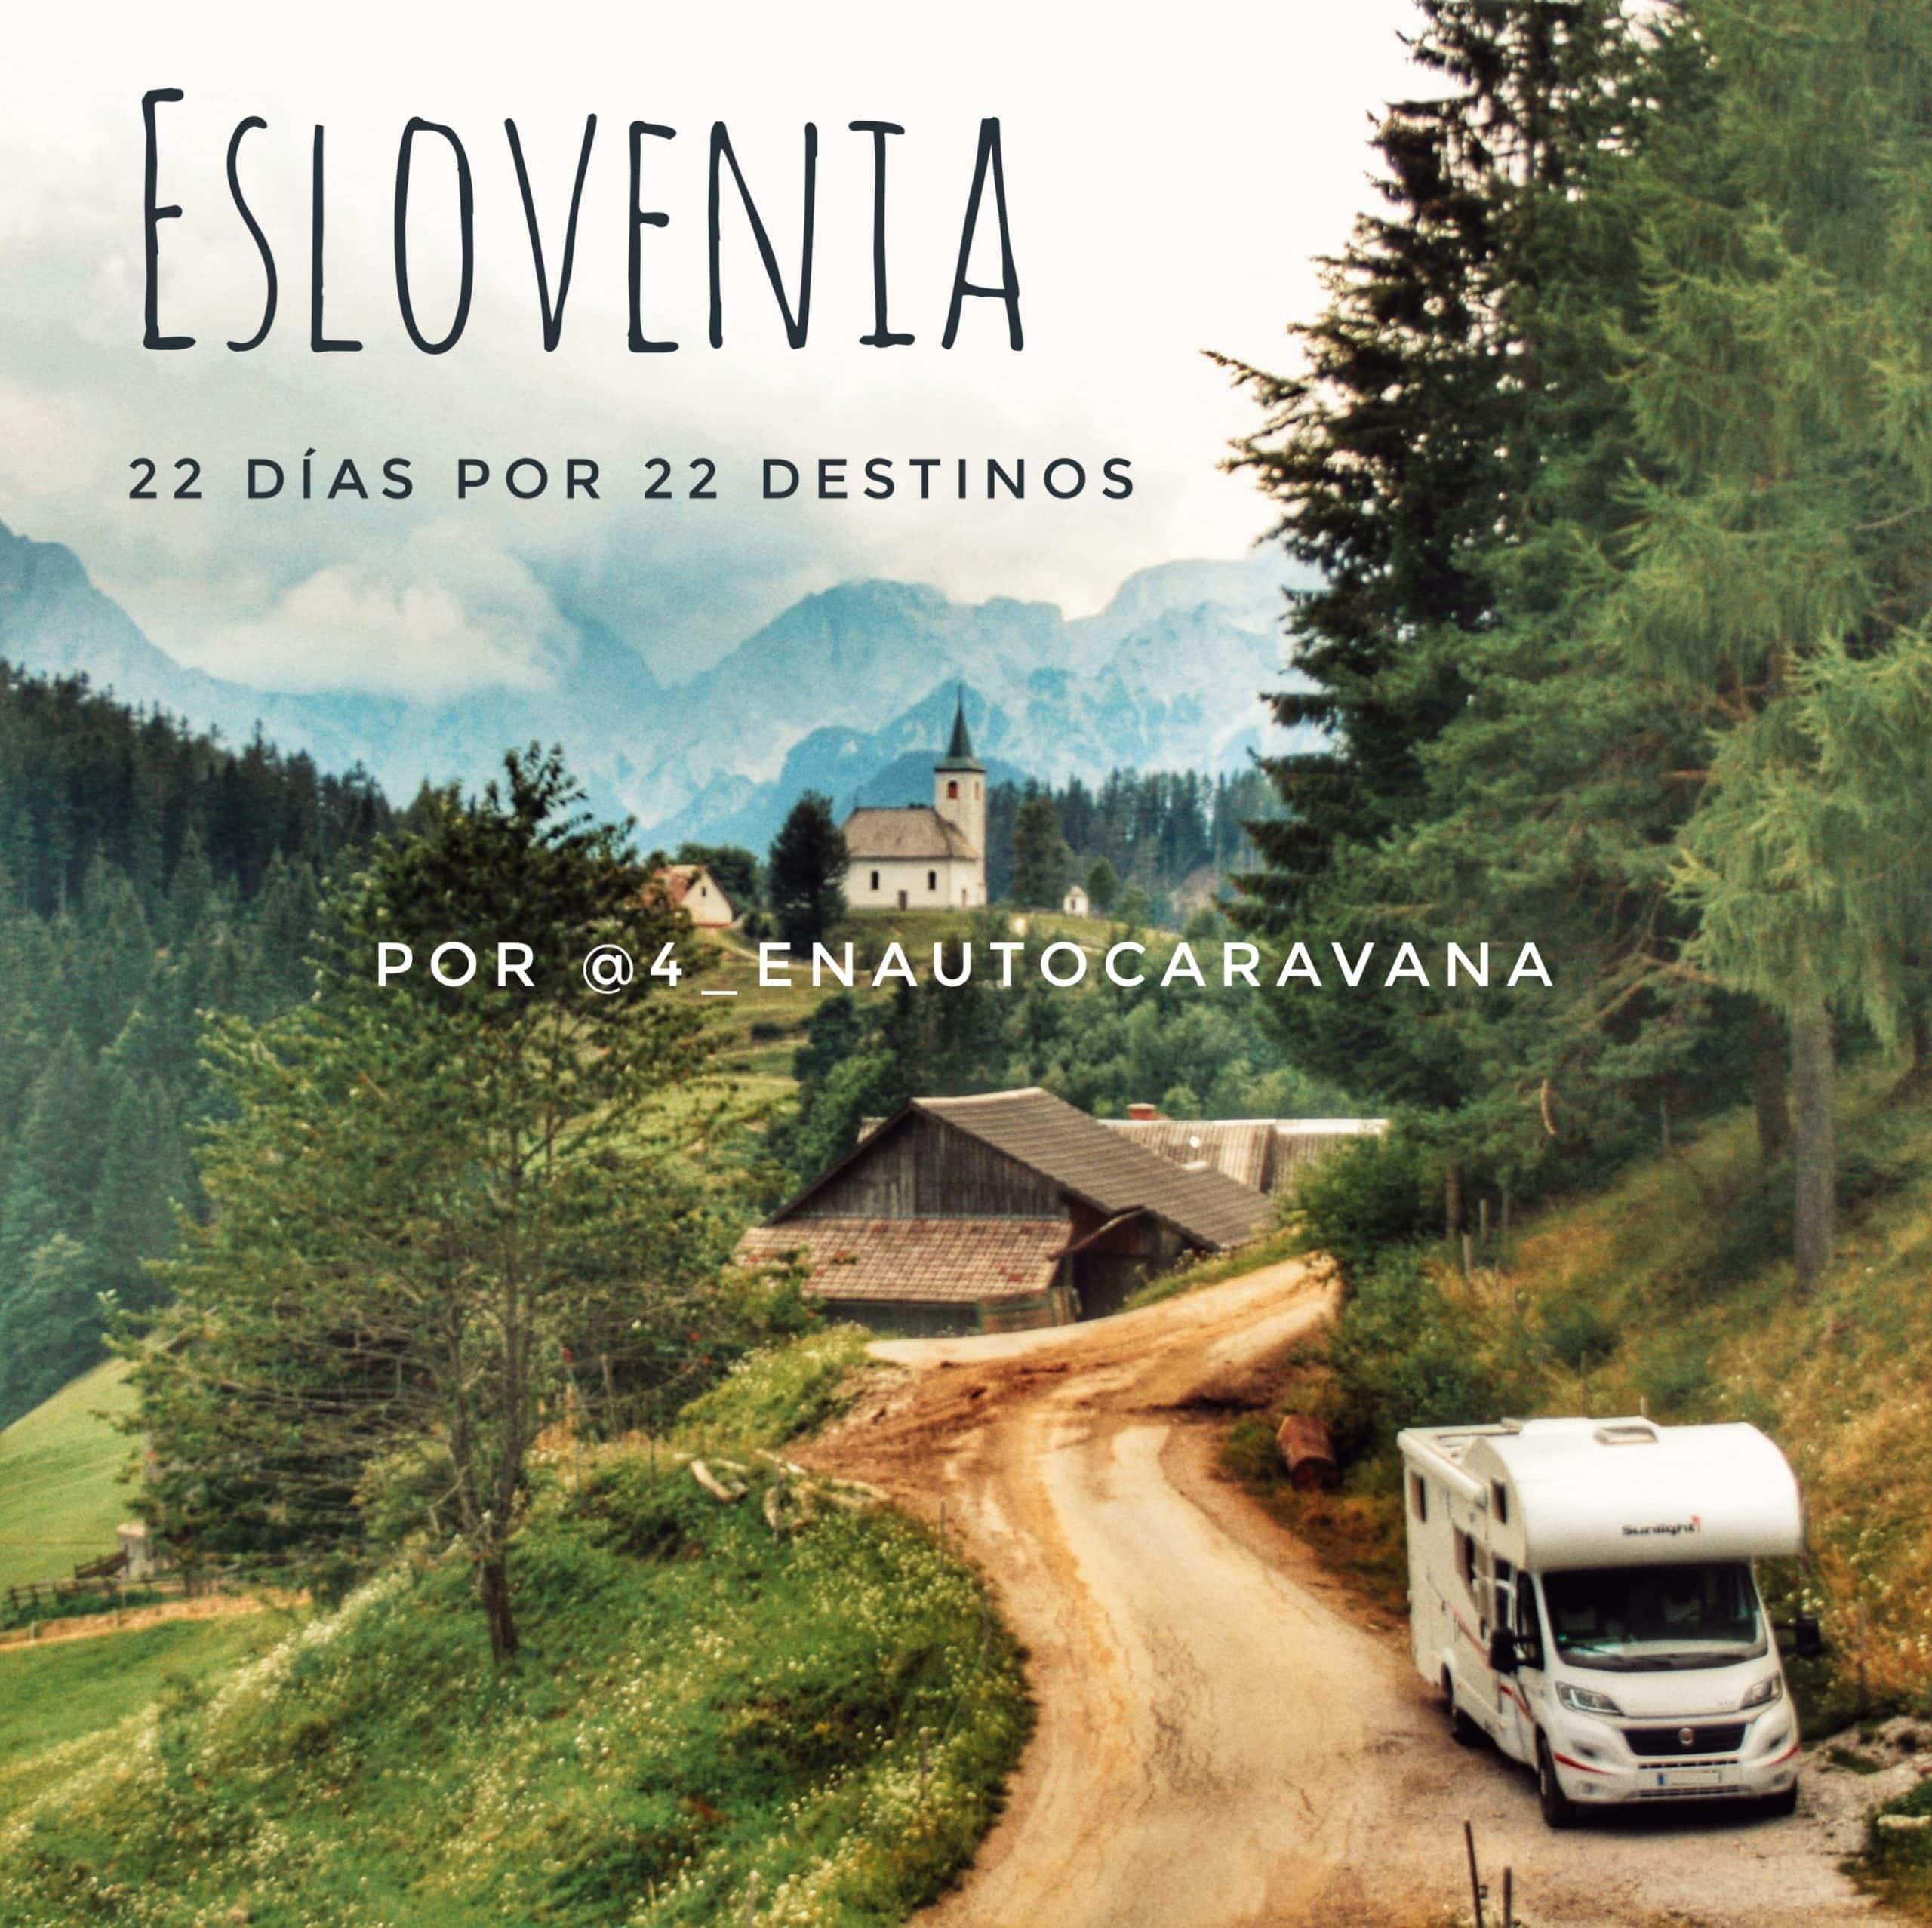 Ruta por Eslovenia en autocaravana. 22 Destinos por 22 días